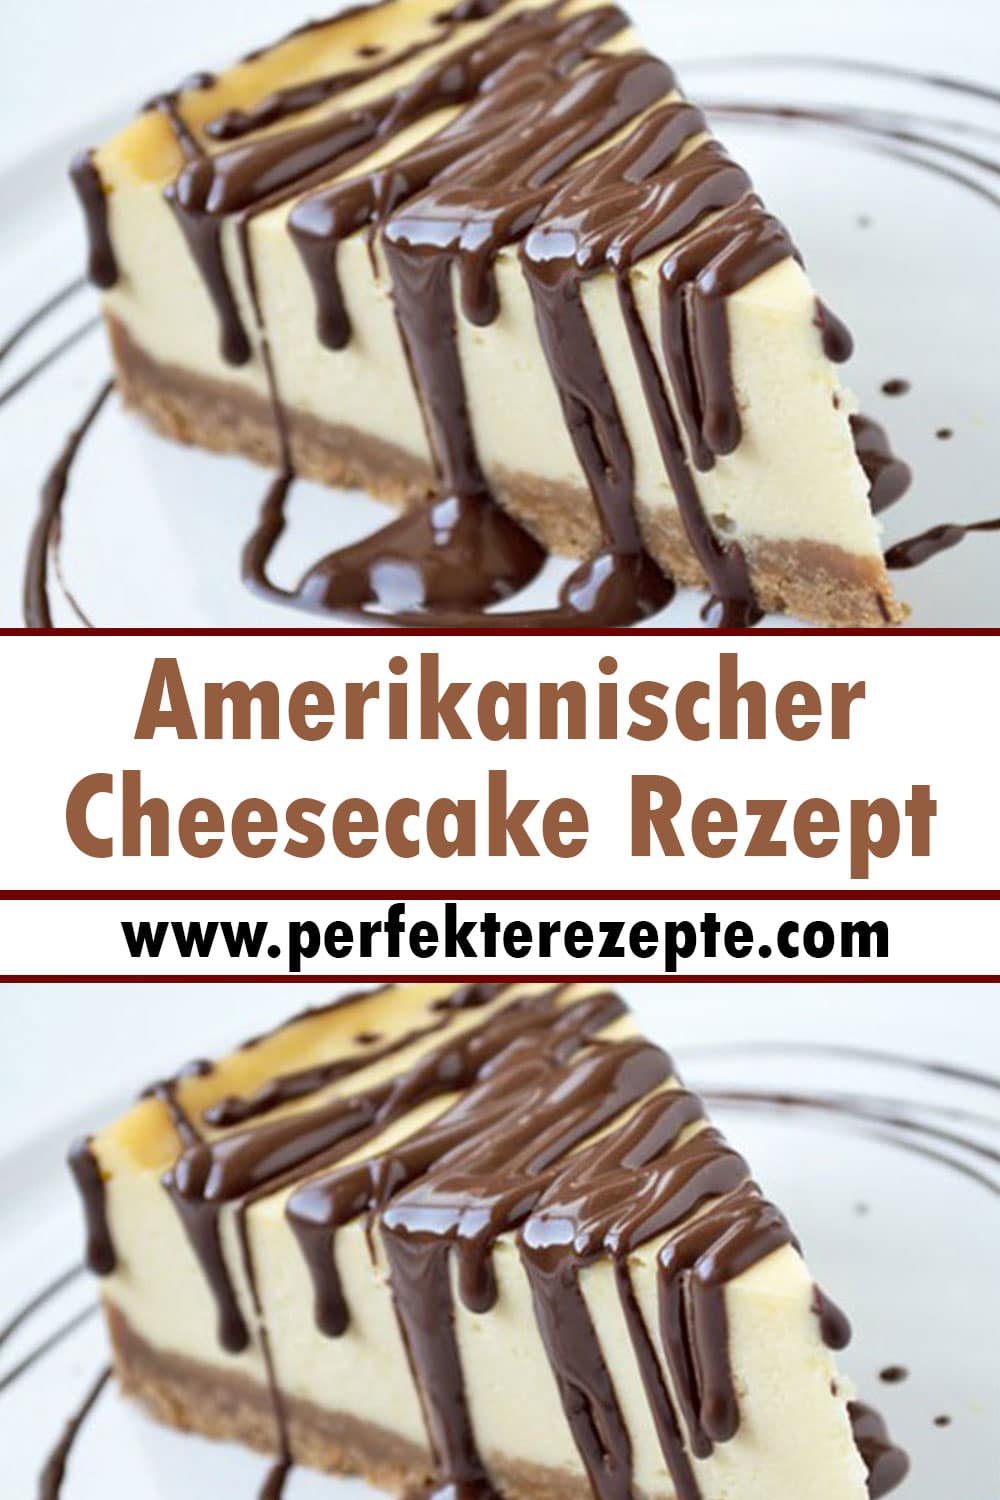 Amerikanischer Cheesecake Rezept